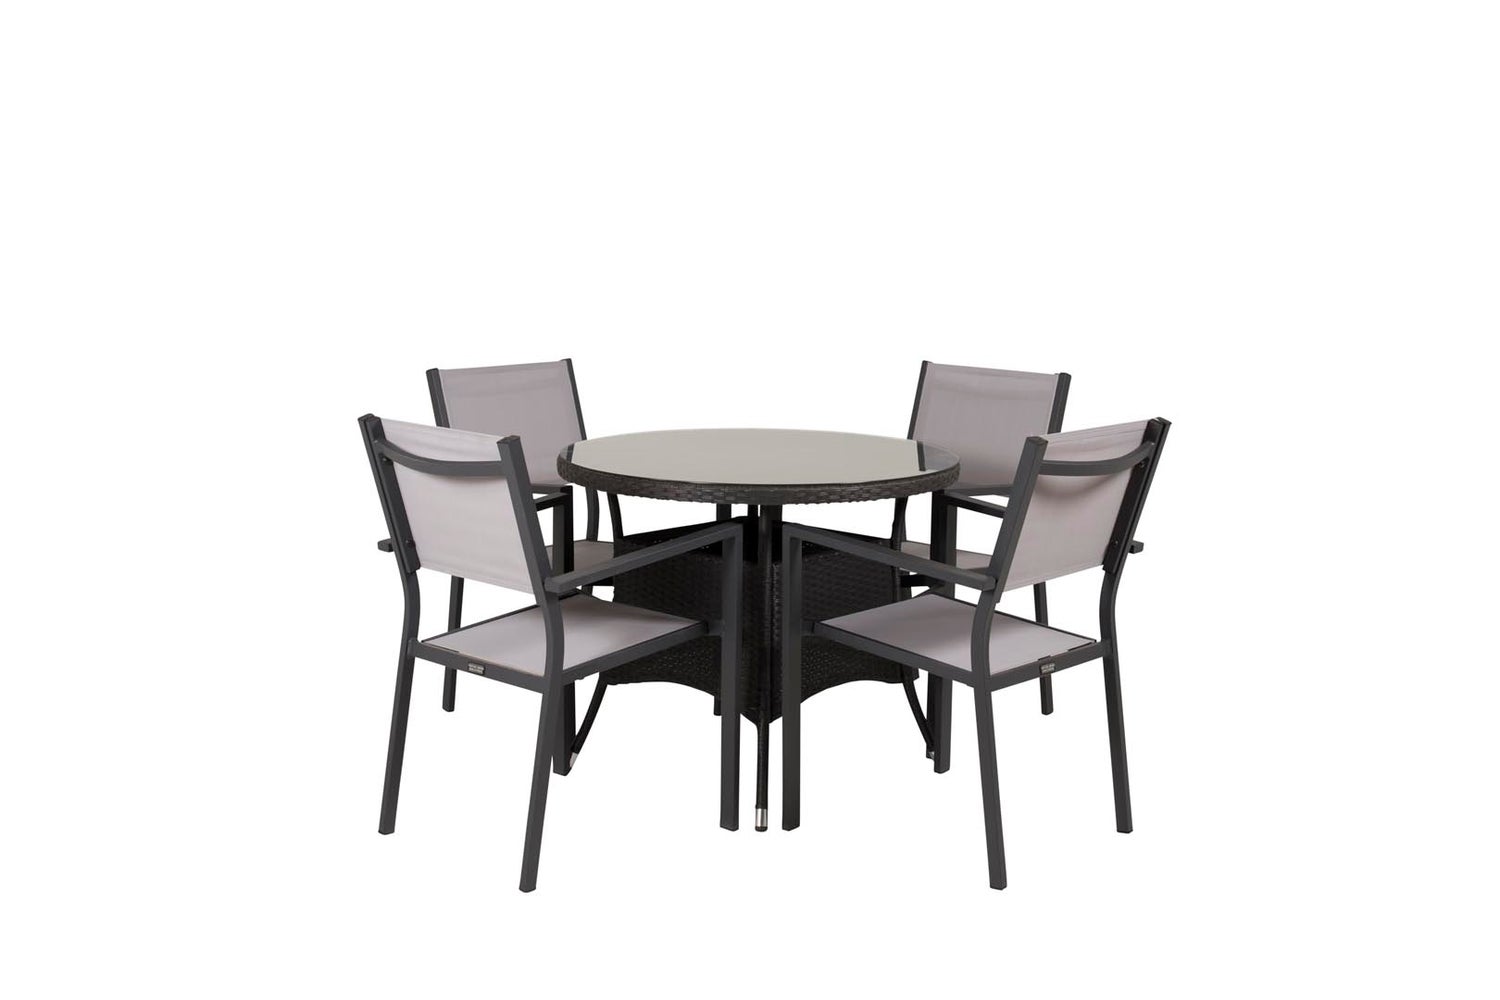 Volta Gartenset Tisch 90x90cm, 4 Stühle Copacabana, schwarz,grau.